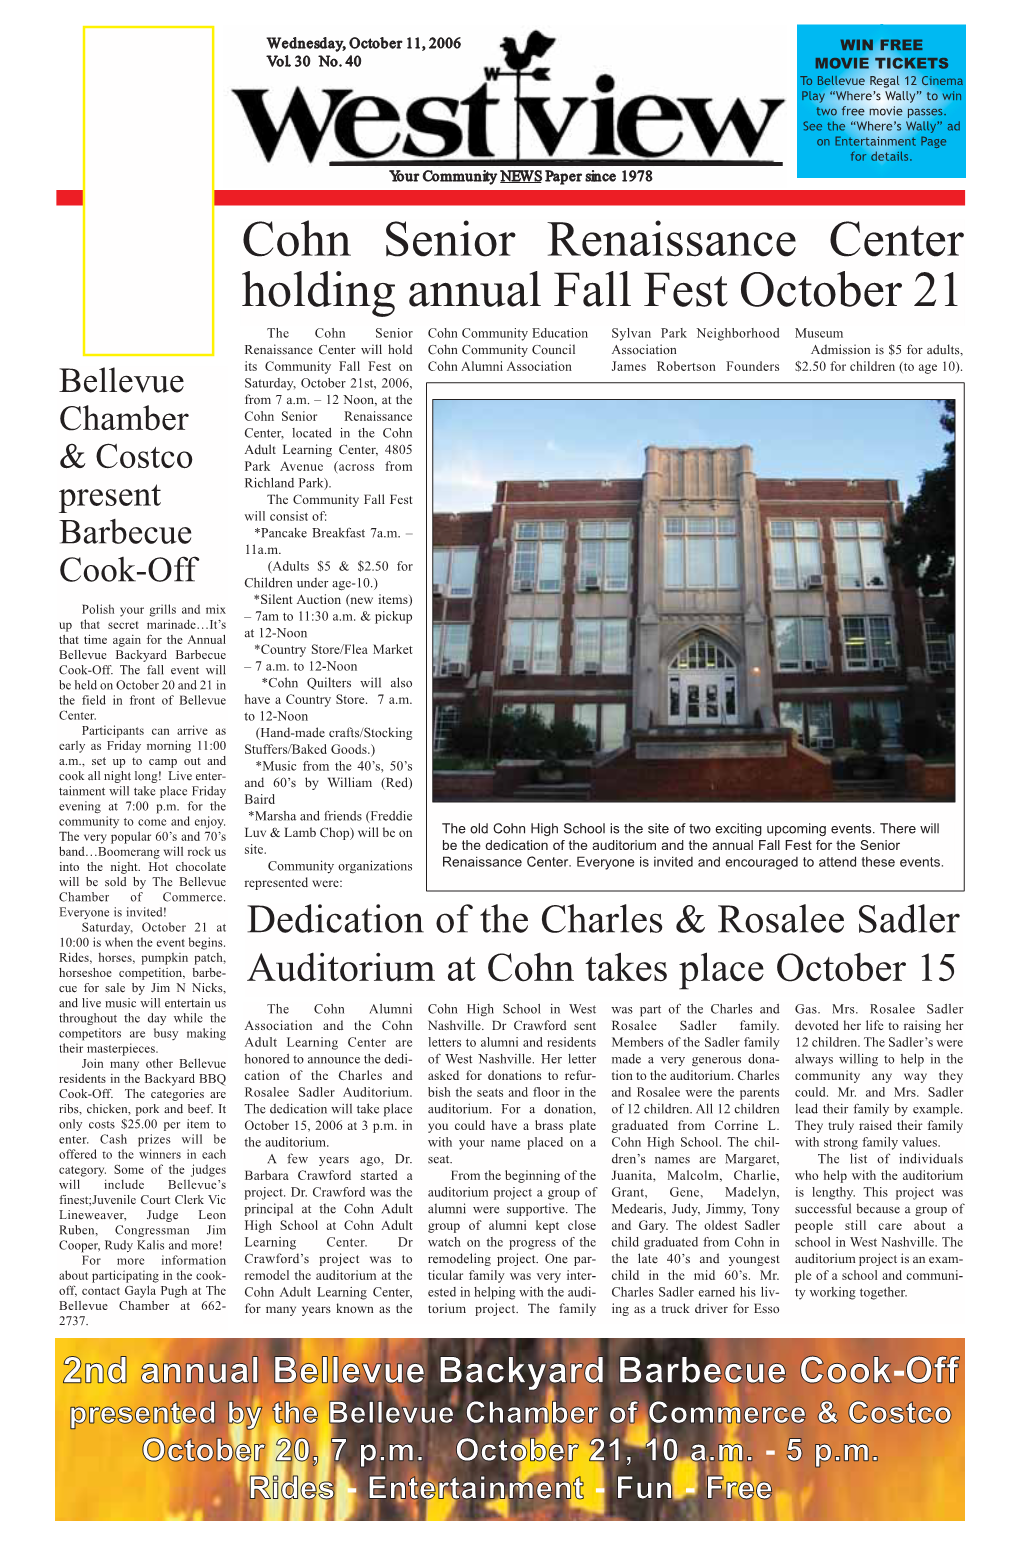 Cohn Senior Renaissance Center Holding Annual Fall Fest October 21